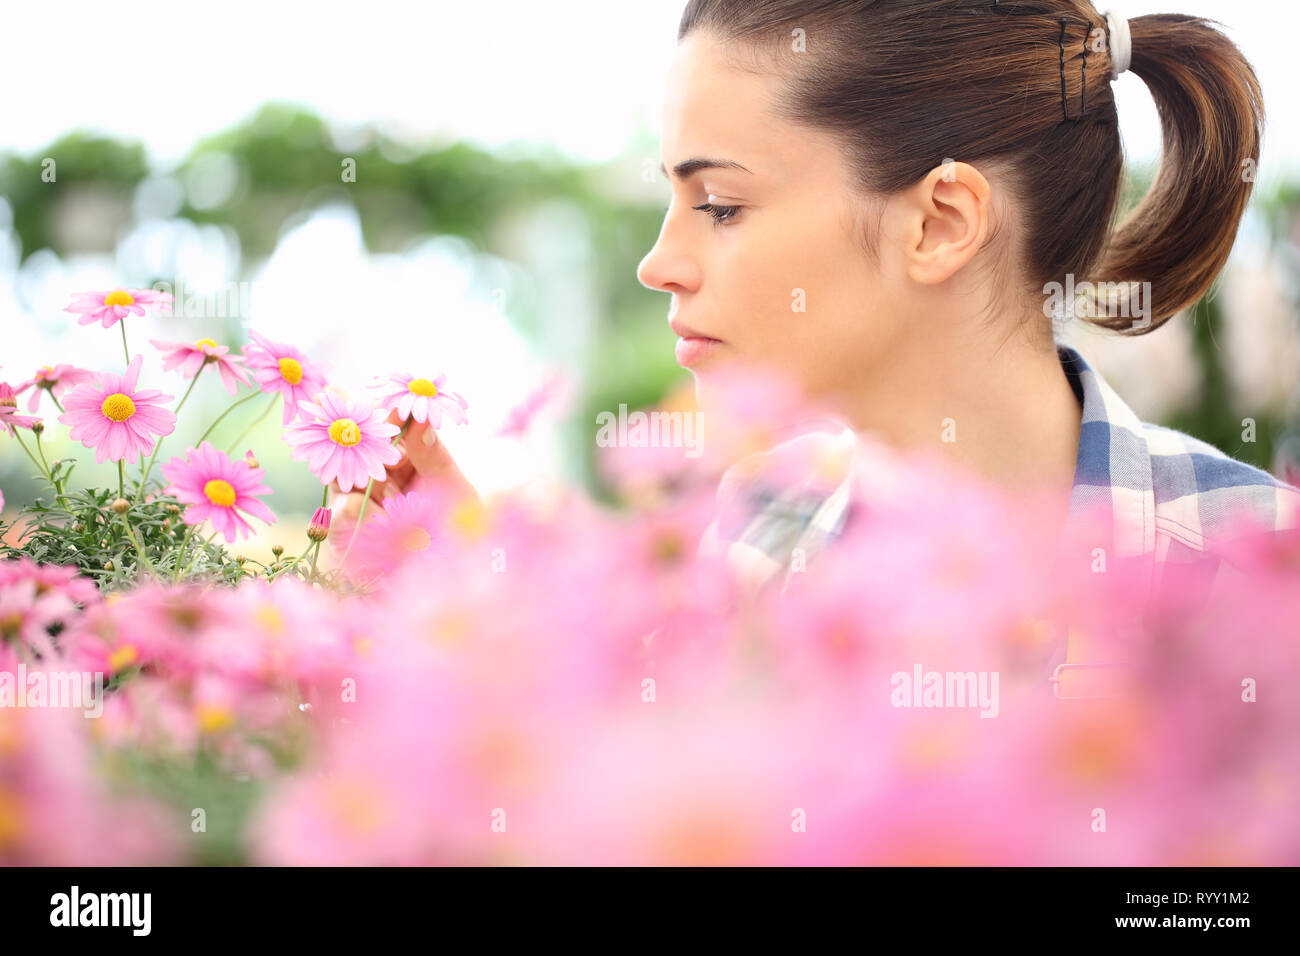 Concetto di primavera, donna nel giardino di fiori di margherite, close up Foto Stock